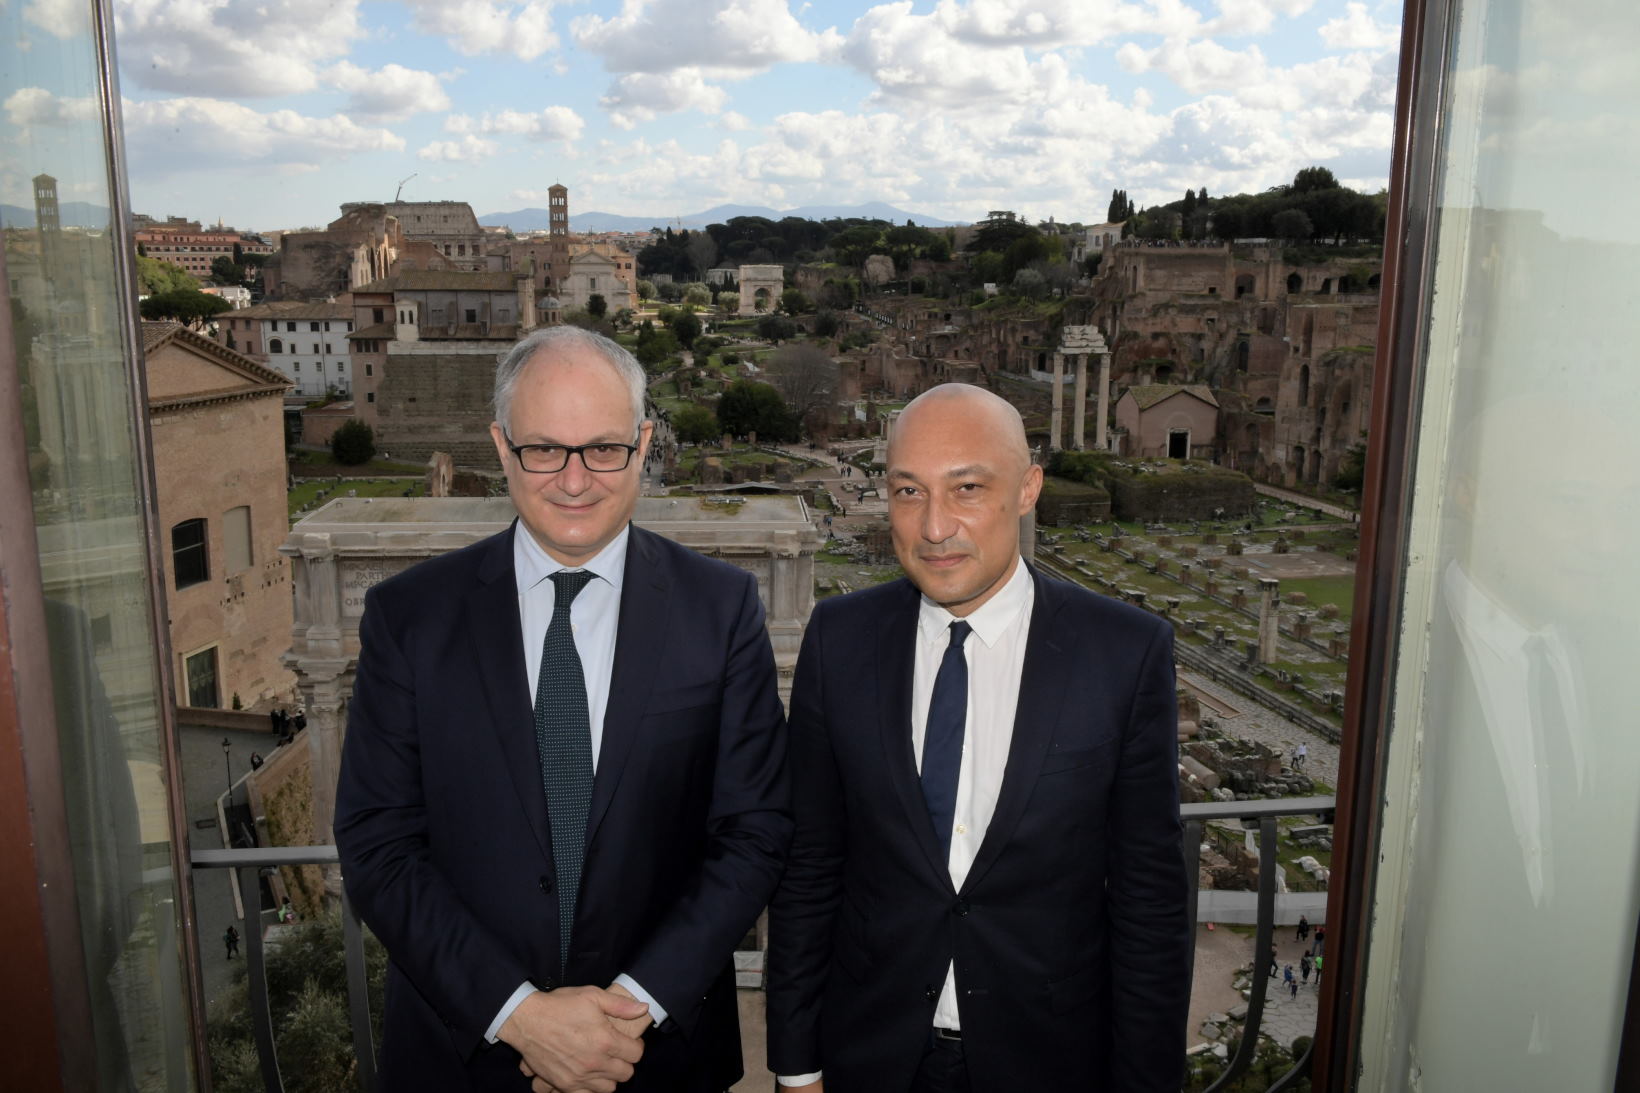 Roberto Gualtieri, le maire de Rome, et Arnaud Ngatcha.